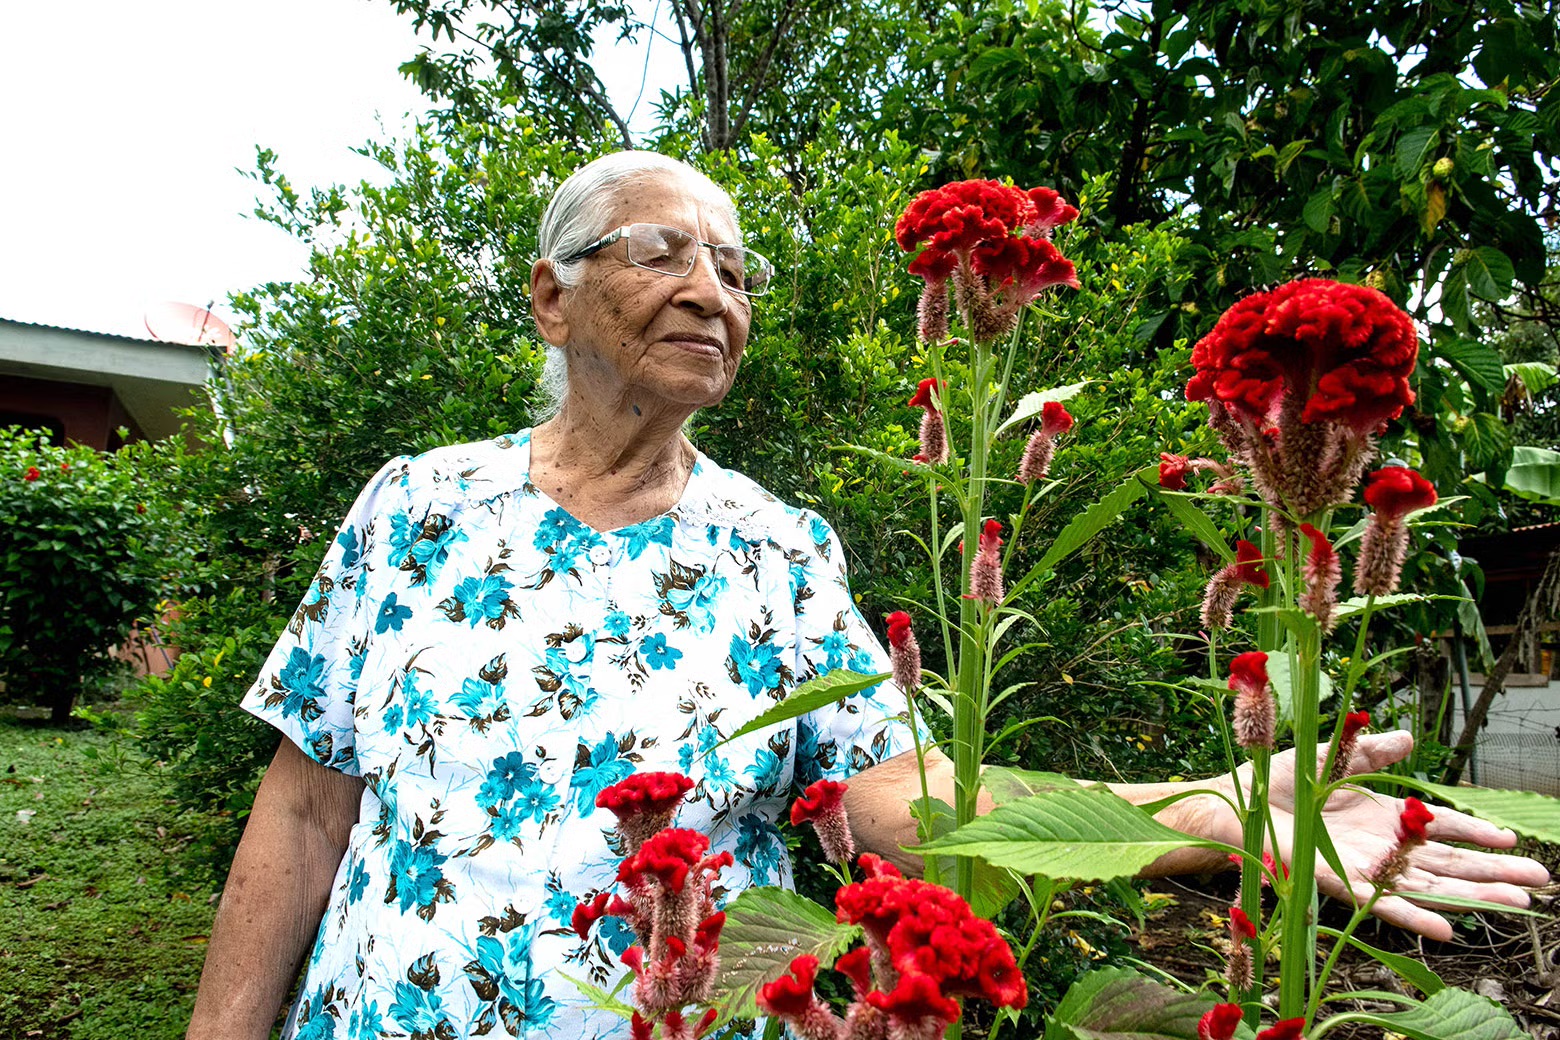 المعمِّرة كليمنتينا إسبينوزا تعتني بحديقتها في نيكويا، كوستاريكا